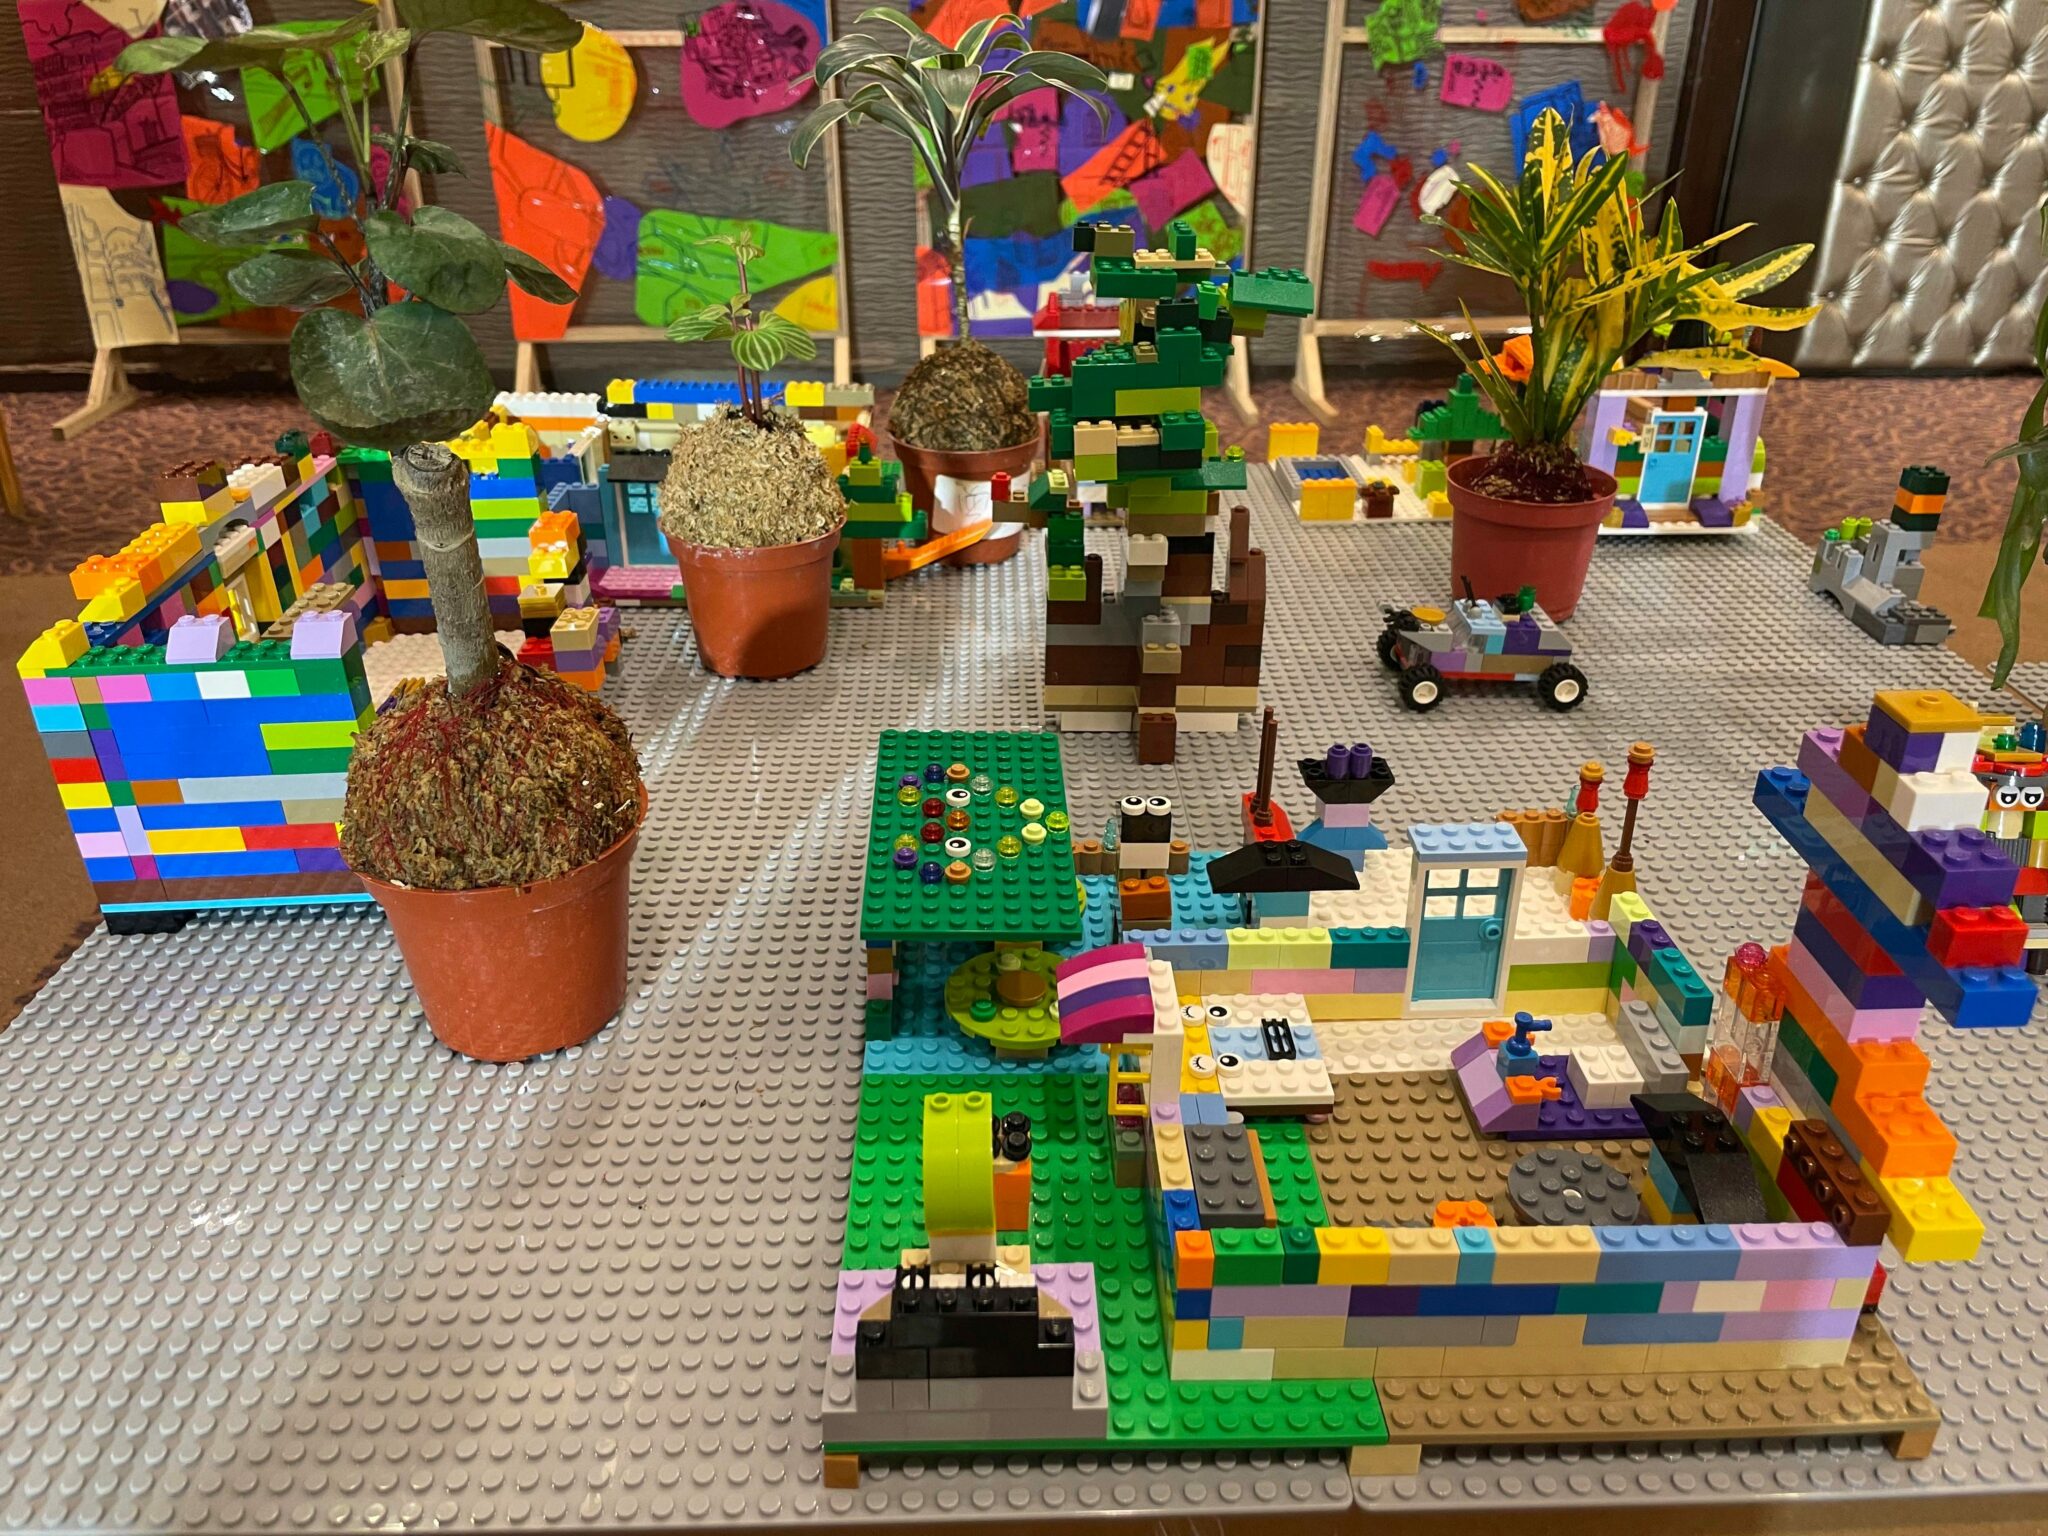 Generasi kedua yang baru menggunakan Lego untuk membuat model toko komunitas. Sumber: Eden Foundation (伊甸基金會)